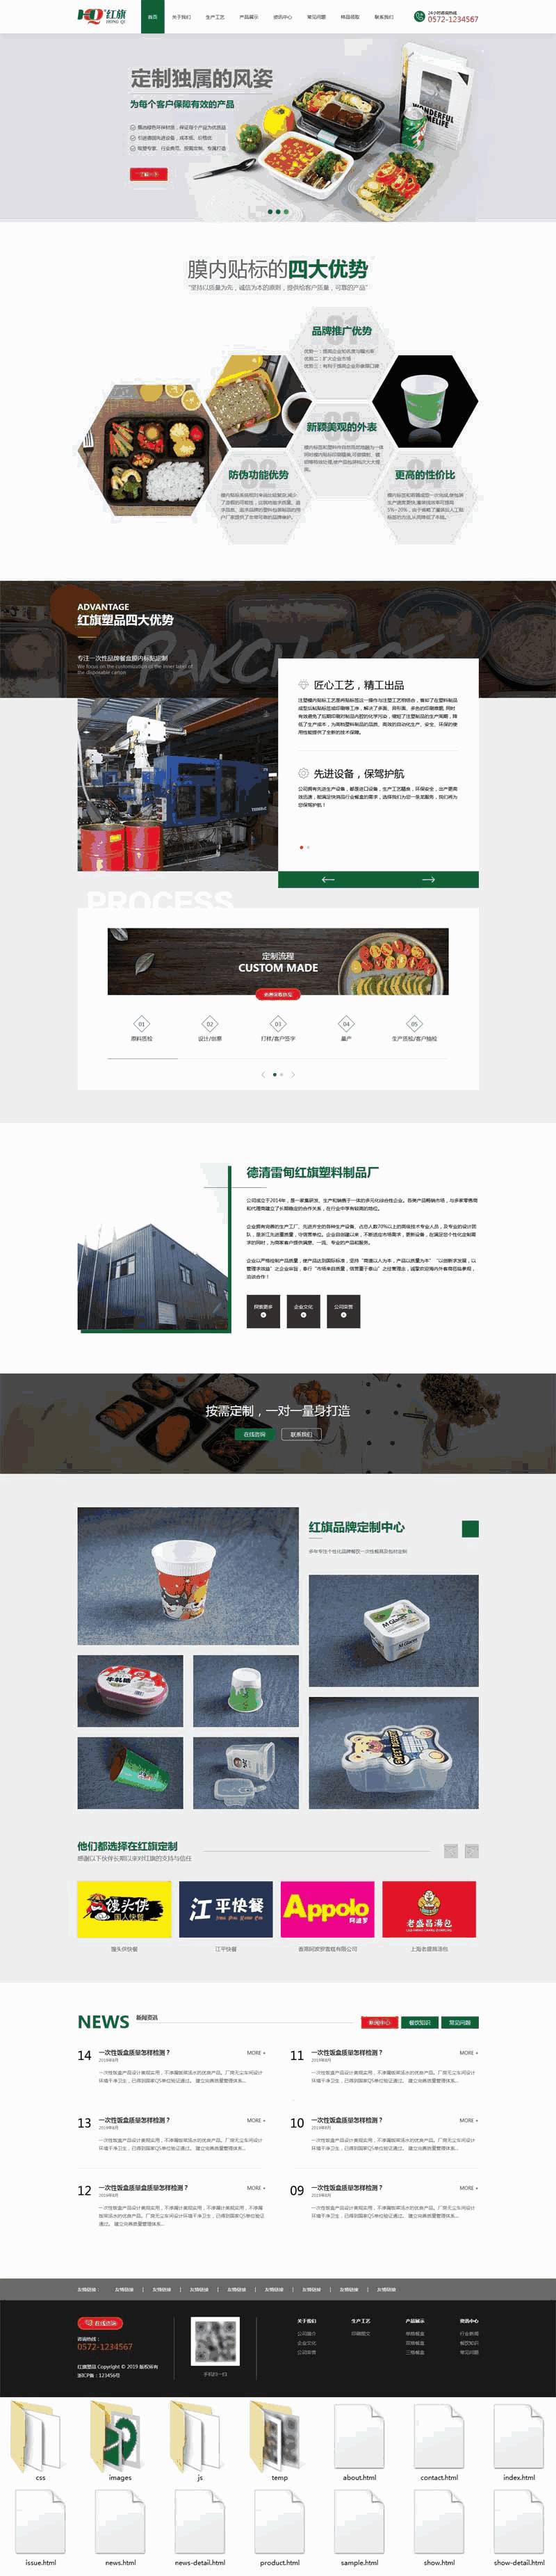 绿色环保的样品包装设计公司网站Wordpress模板（带手机版）效果图